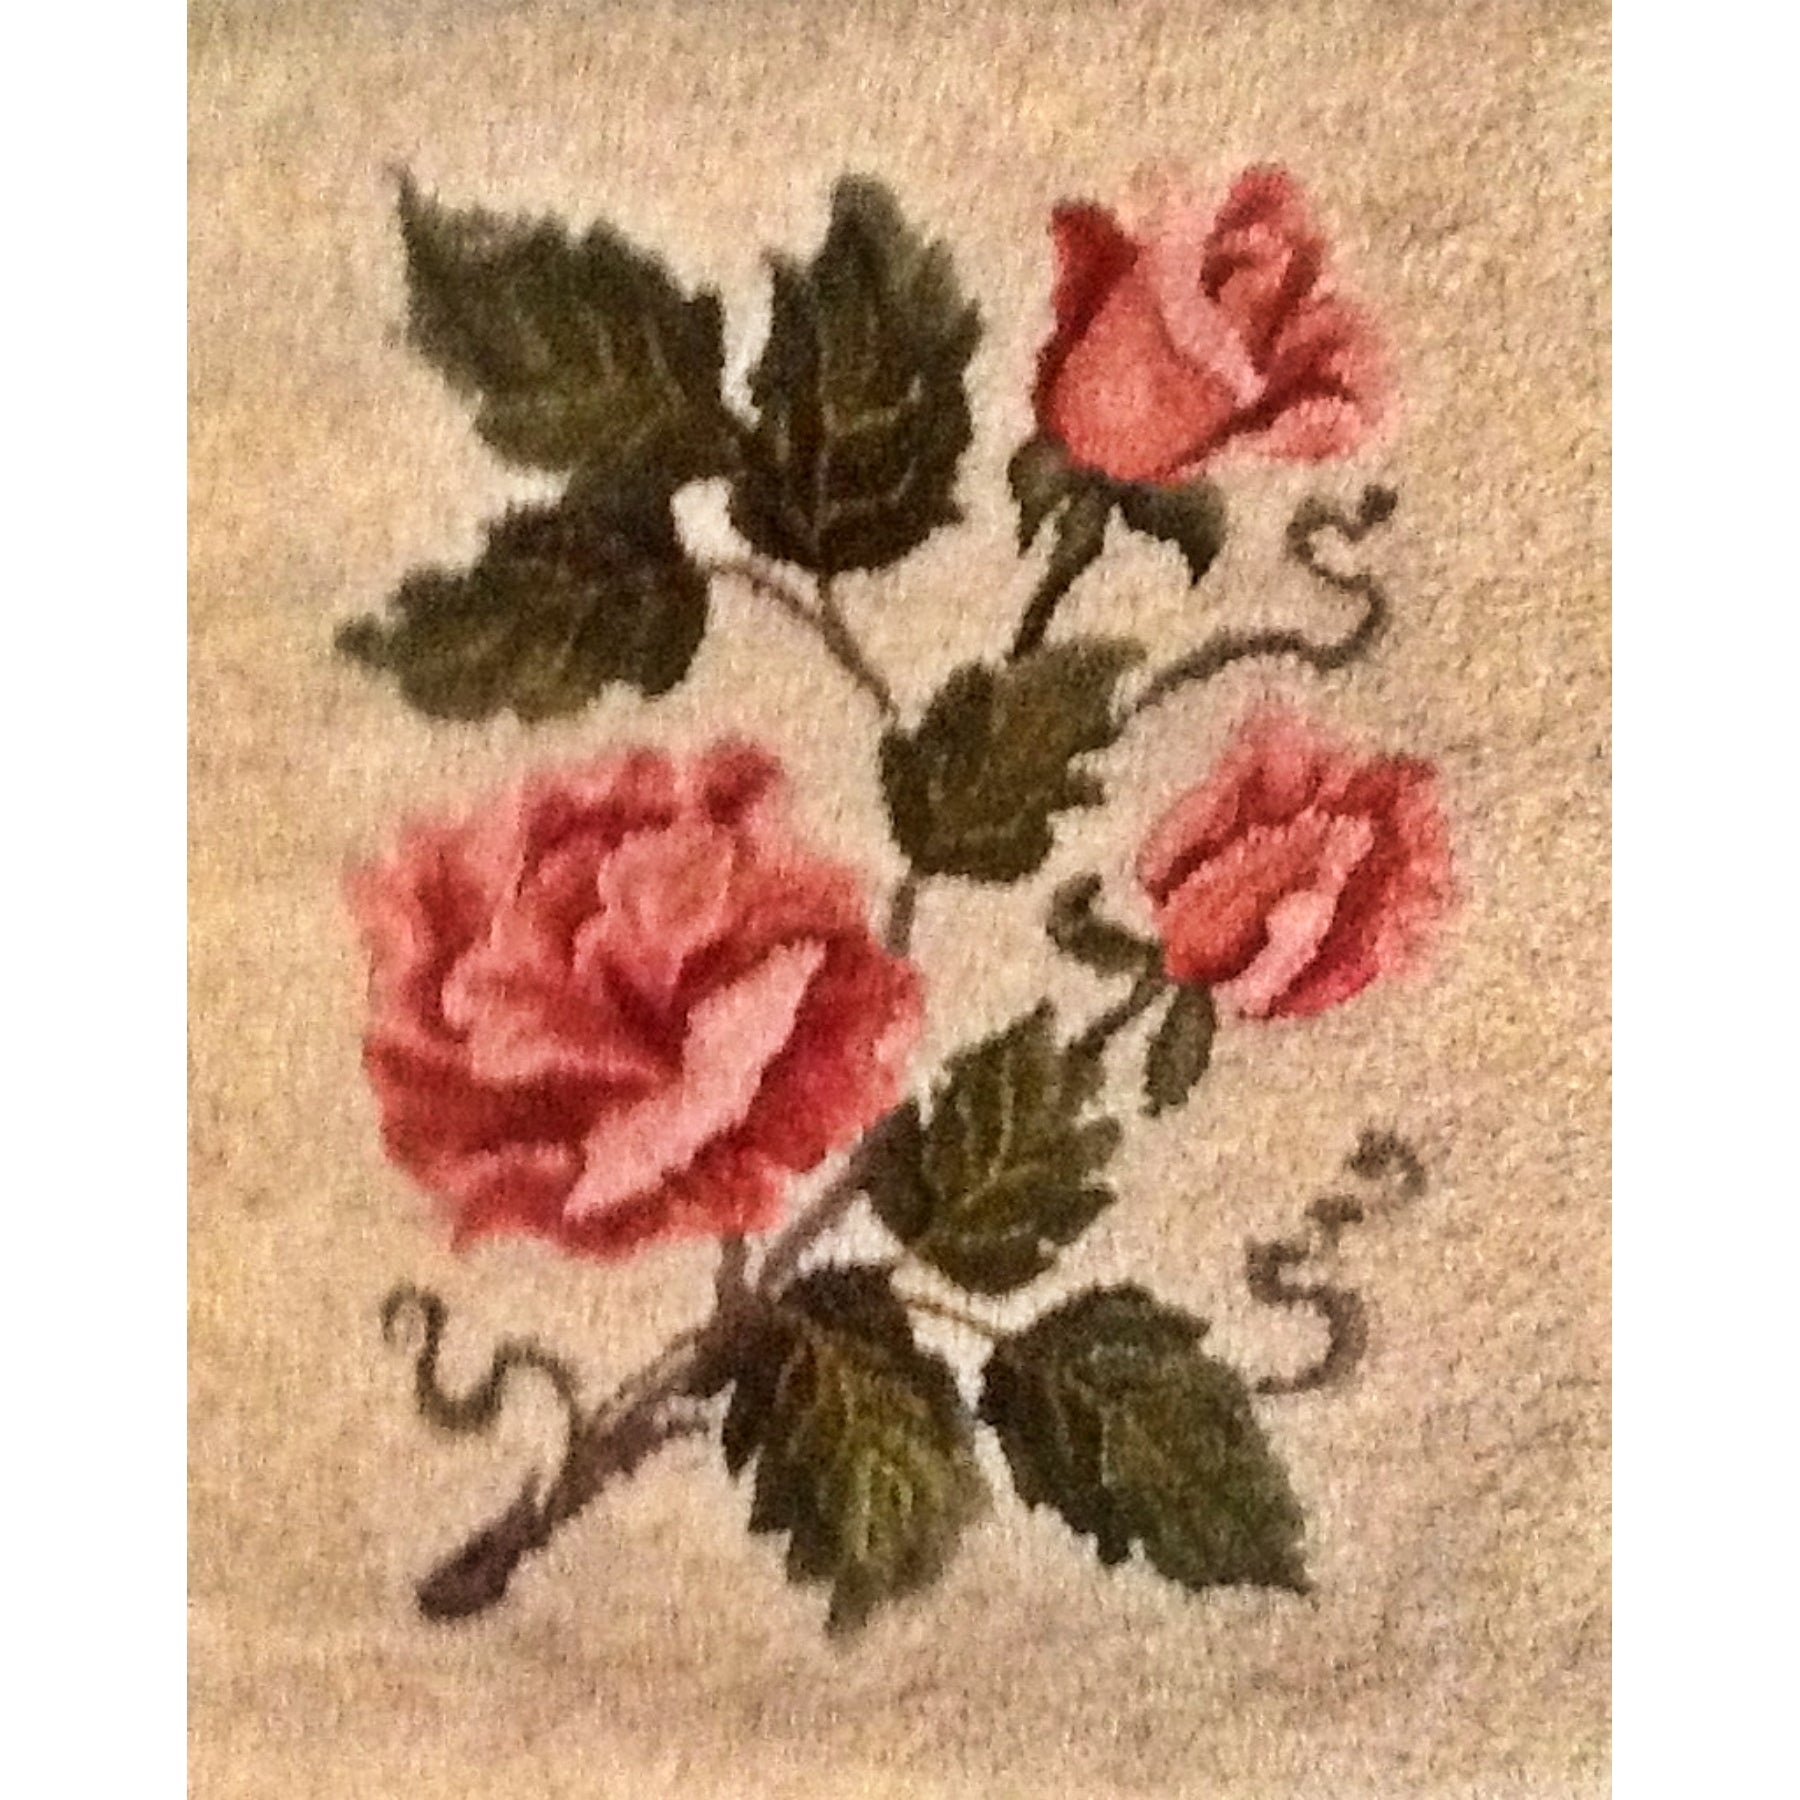 Roses, rug hooked by Kathy McPartlan